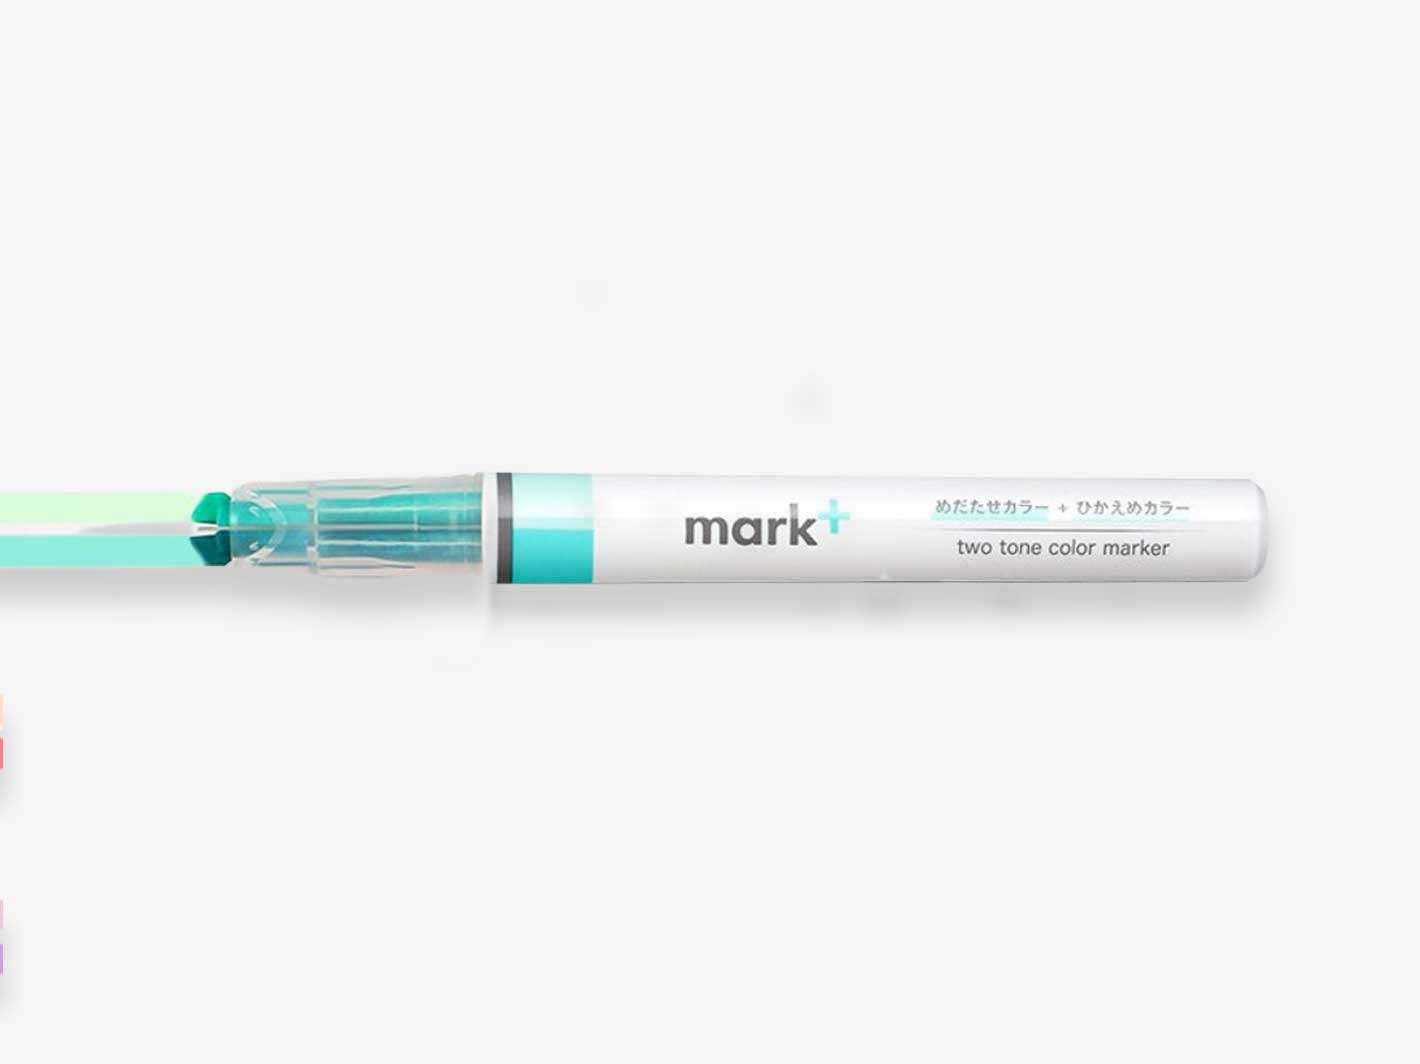 Mark+ 2 Tone Color Marking Pen - Green